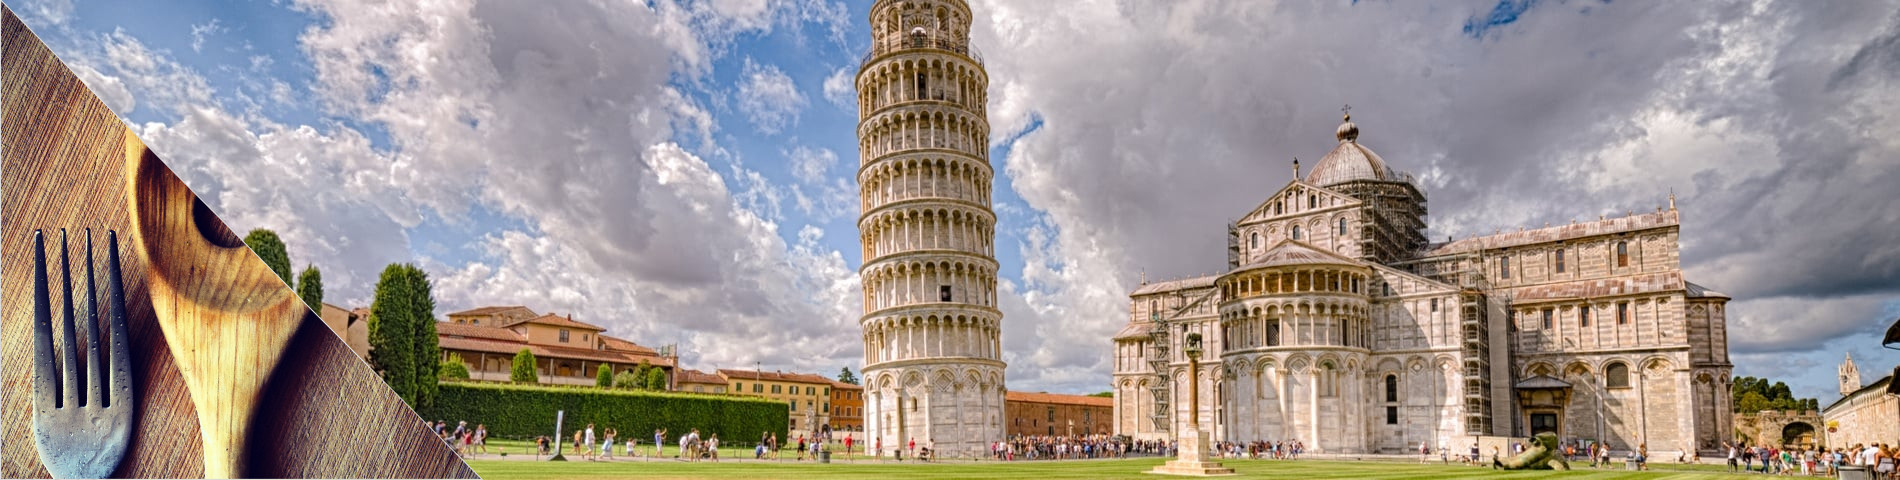 Pisa - Italià i Cuina